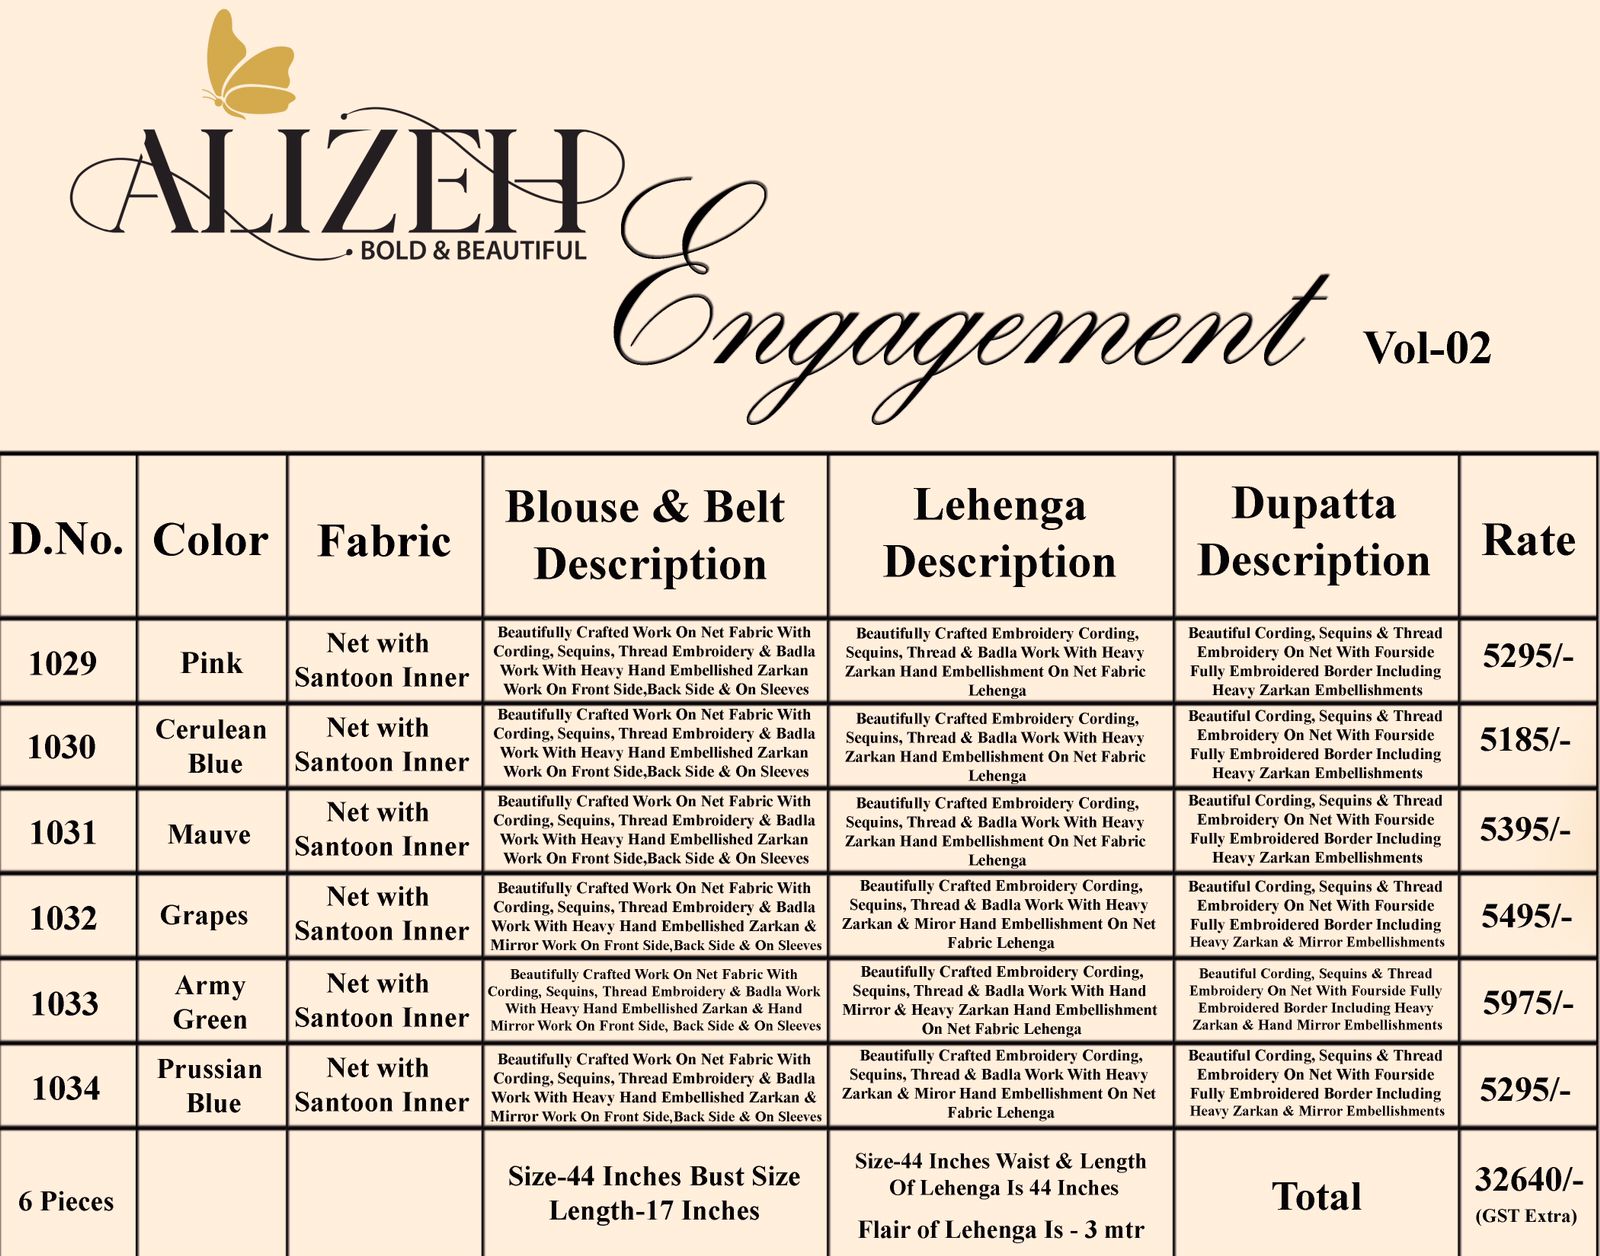 Alizeh Engagement Vol 2 Party Wear Collection Lehenga Wholesale Price Surat